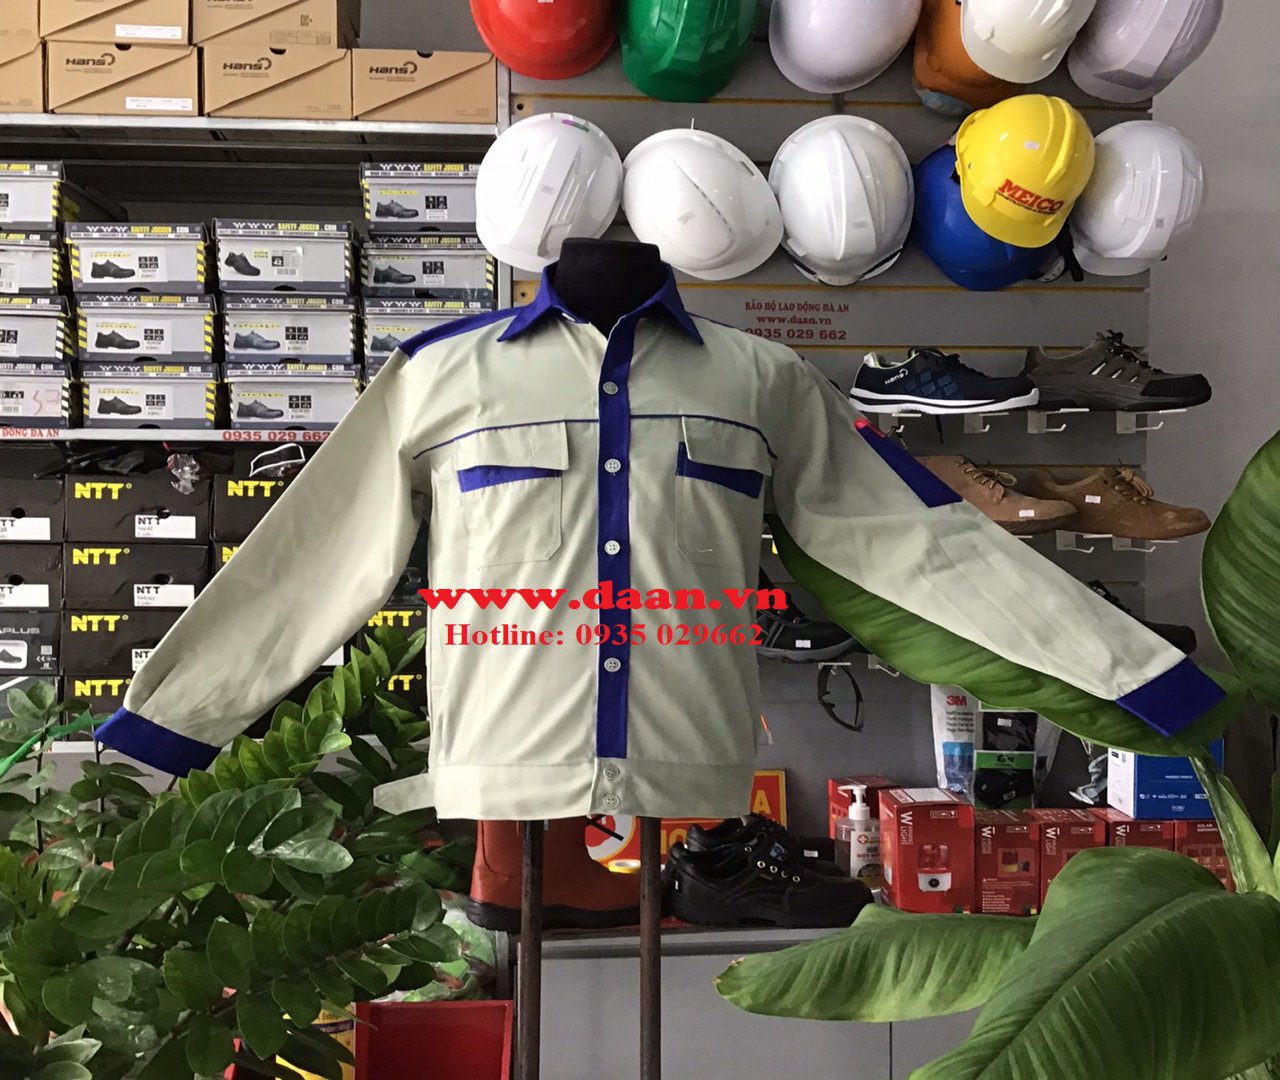 Quần áo công nhân ở Đà Nẵng vinh nghệ an hà tĩnh quảng bình quảng tri huế quảng nam quảng ngãi kon tum gia lai tuy hòa phú yên quy nhơn